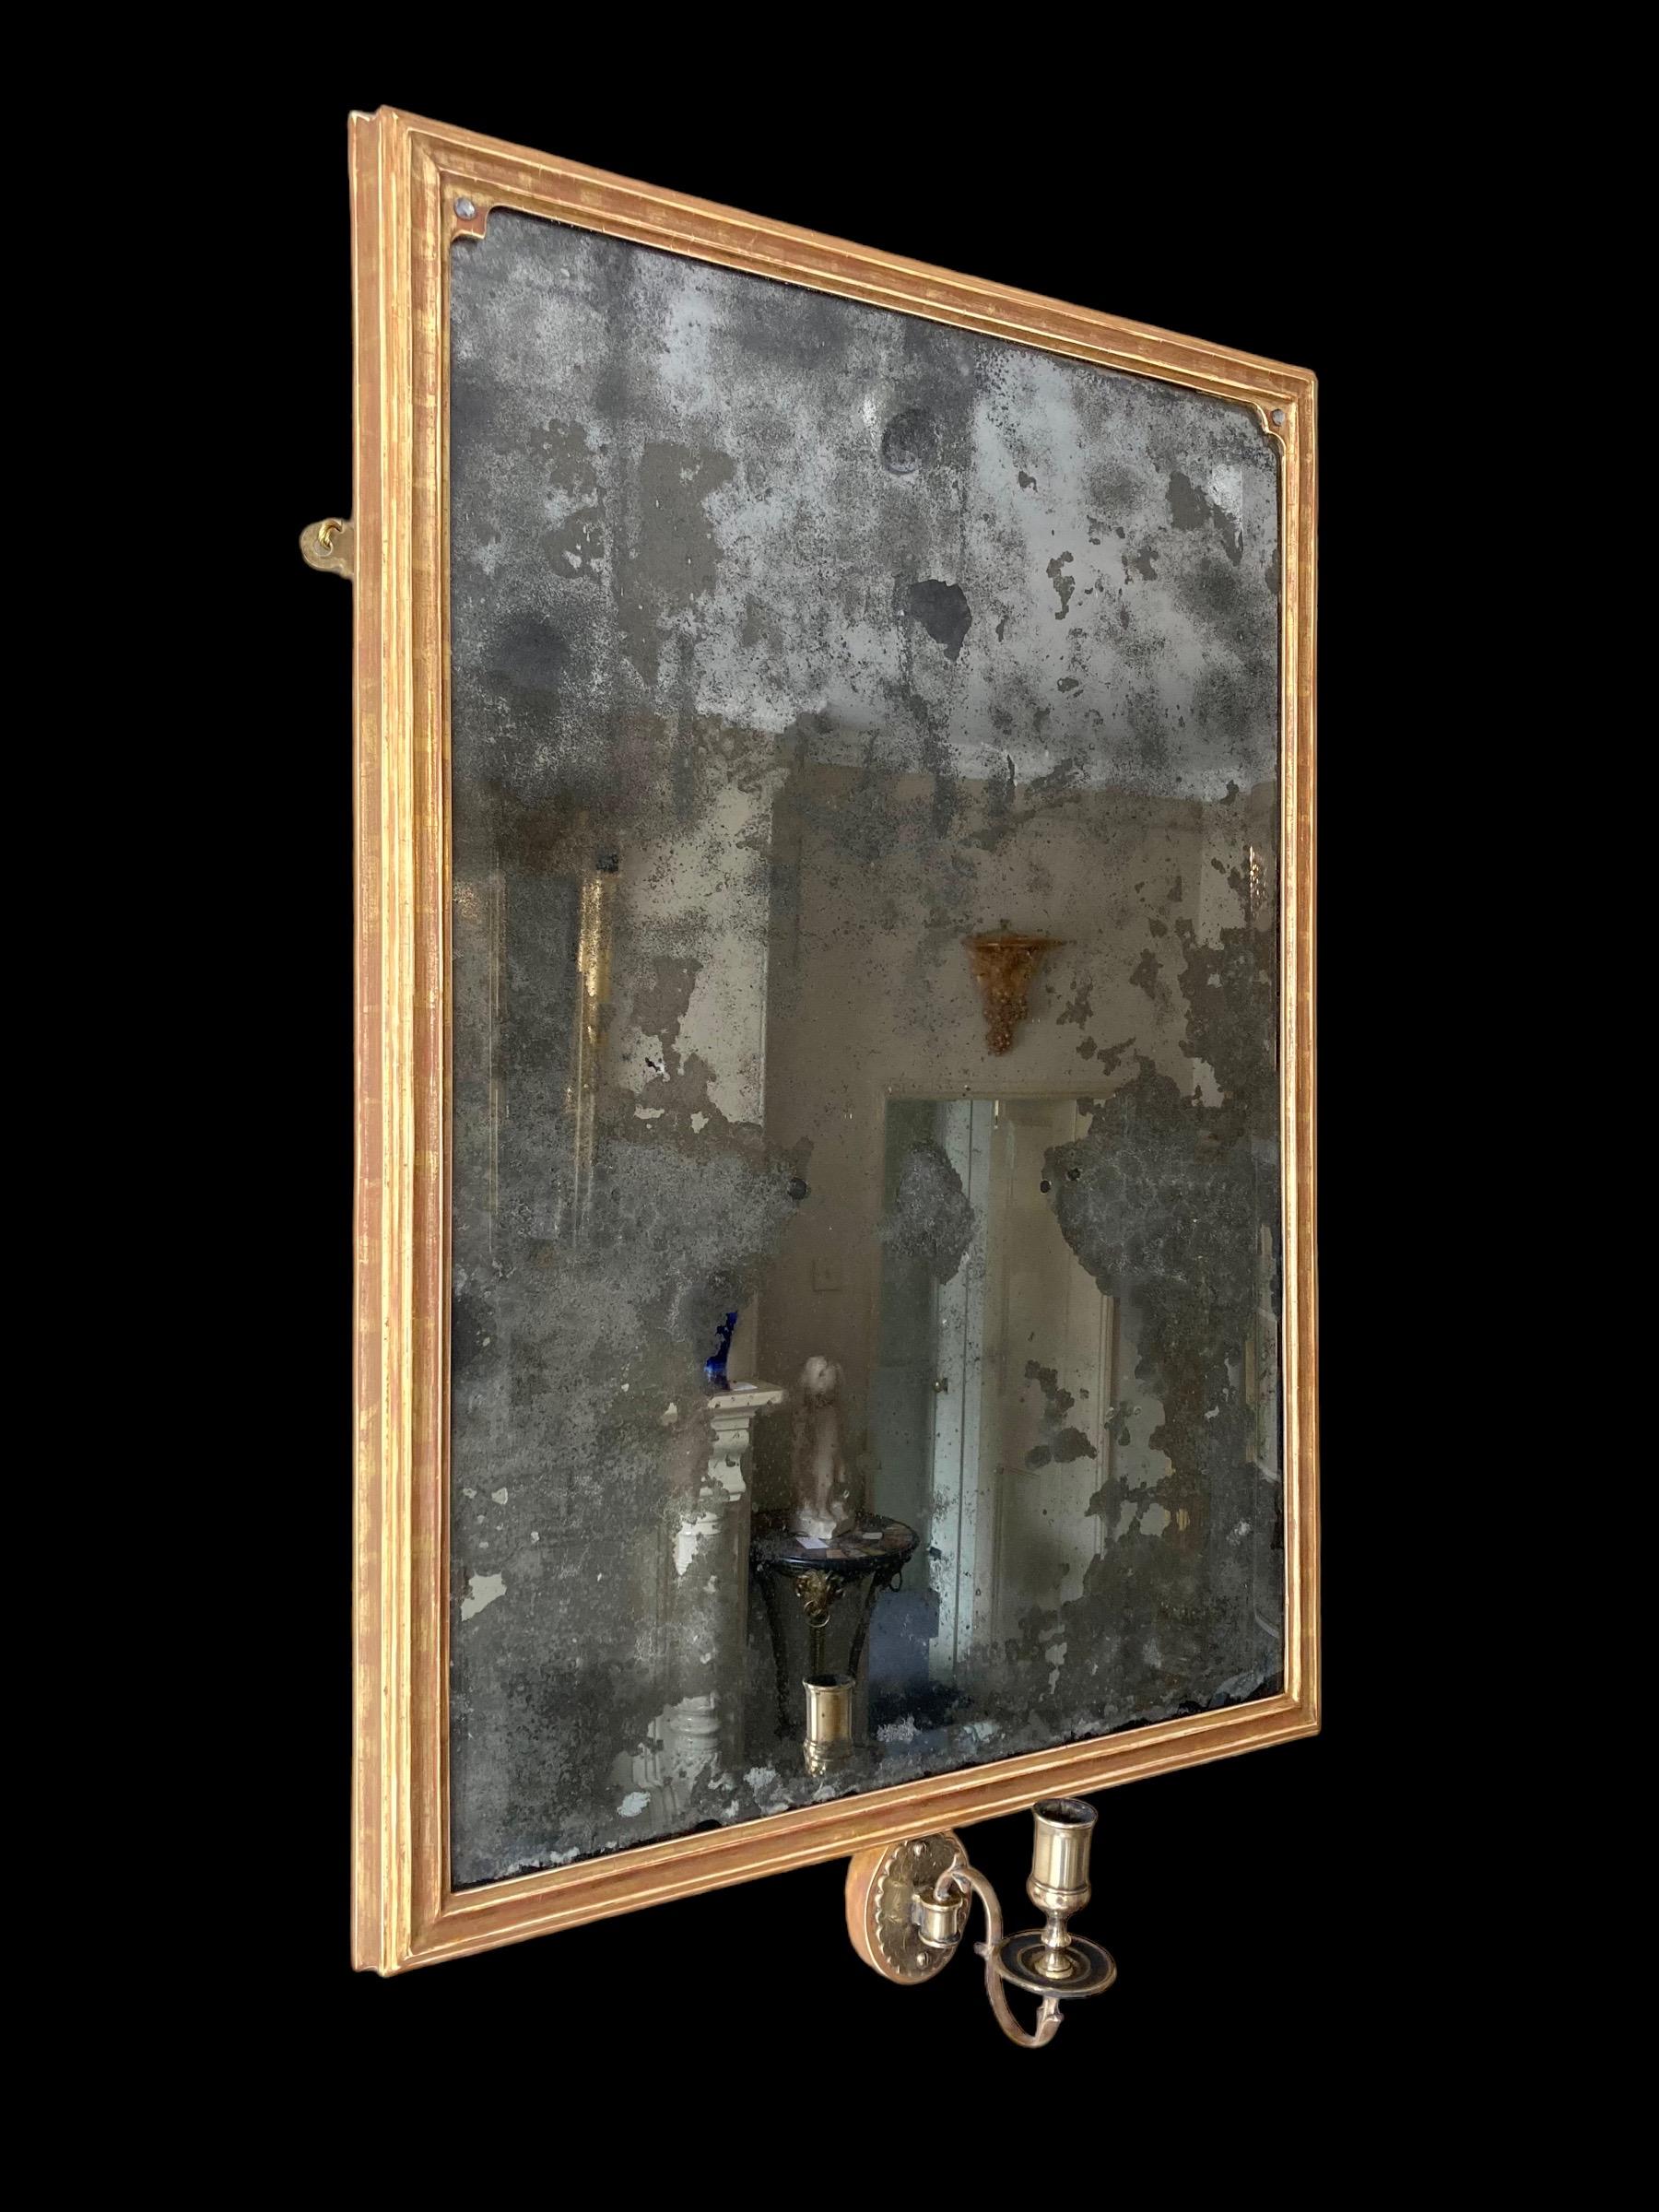 Ein auffälliger rechteckiger Wandspiegel aus vergoldetem Holz mit einem einzigen Kerzenarm.
Die stark stockfleckige Quecksilberspiegelplatte mit abgeschrägtem Rand aus dem 18. Jahrhundert befindet sich in einem späteren klassischen rechteckigen